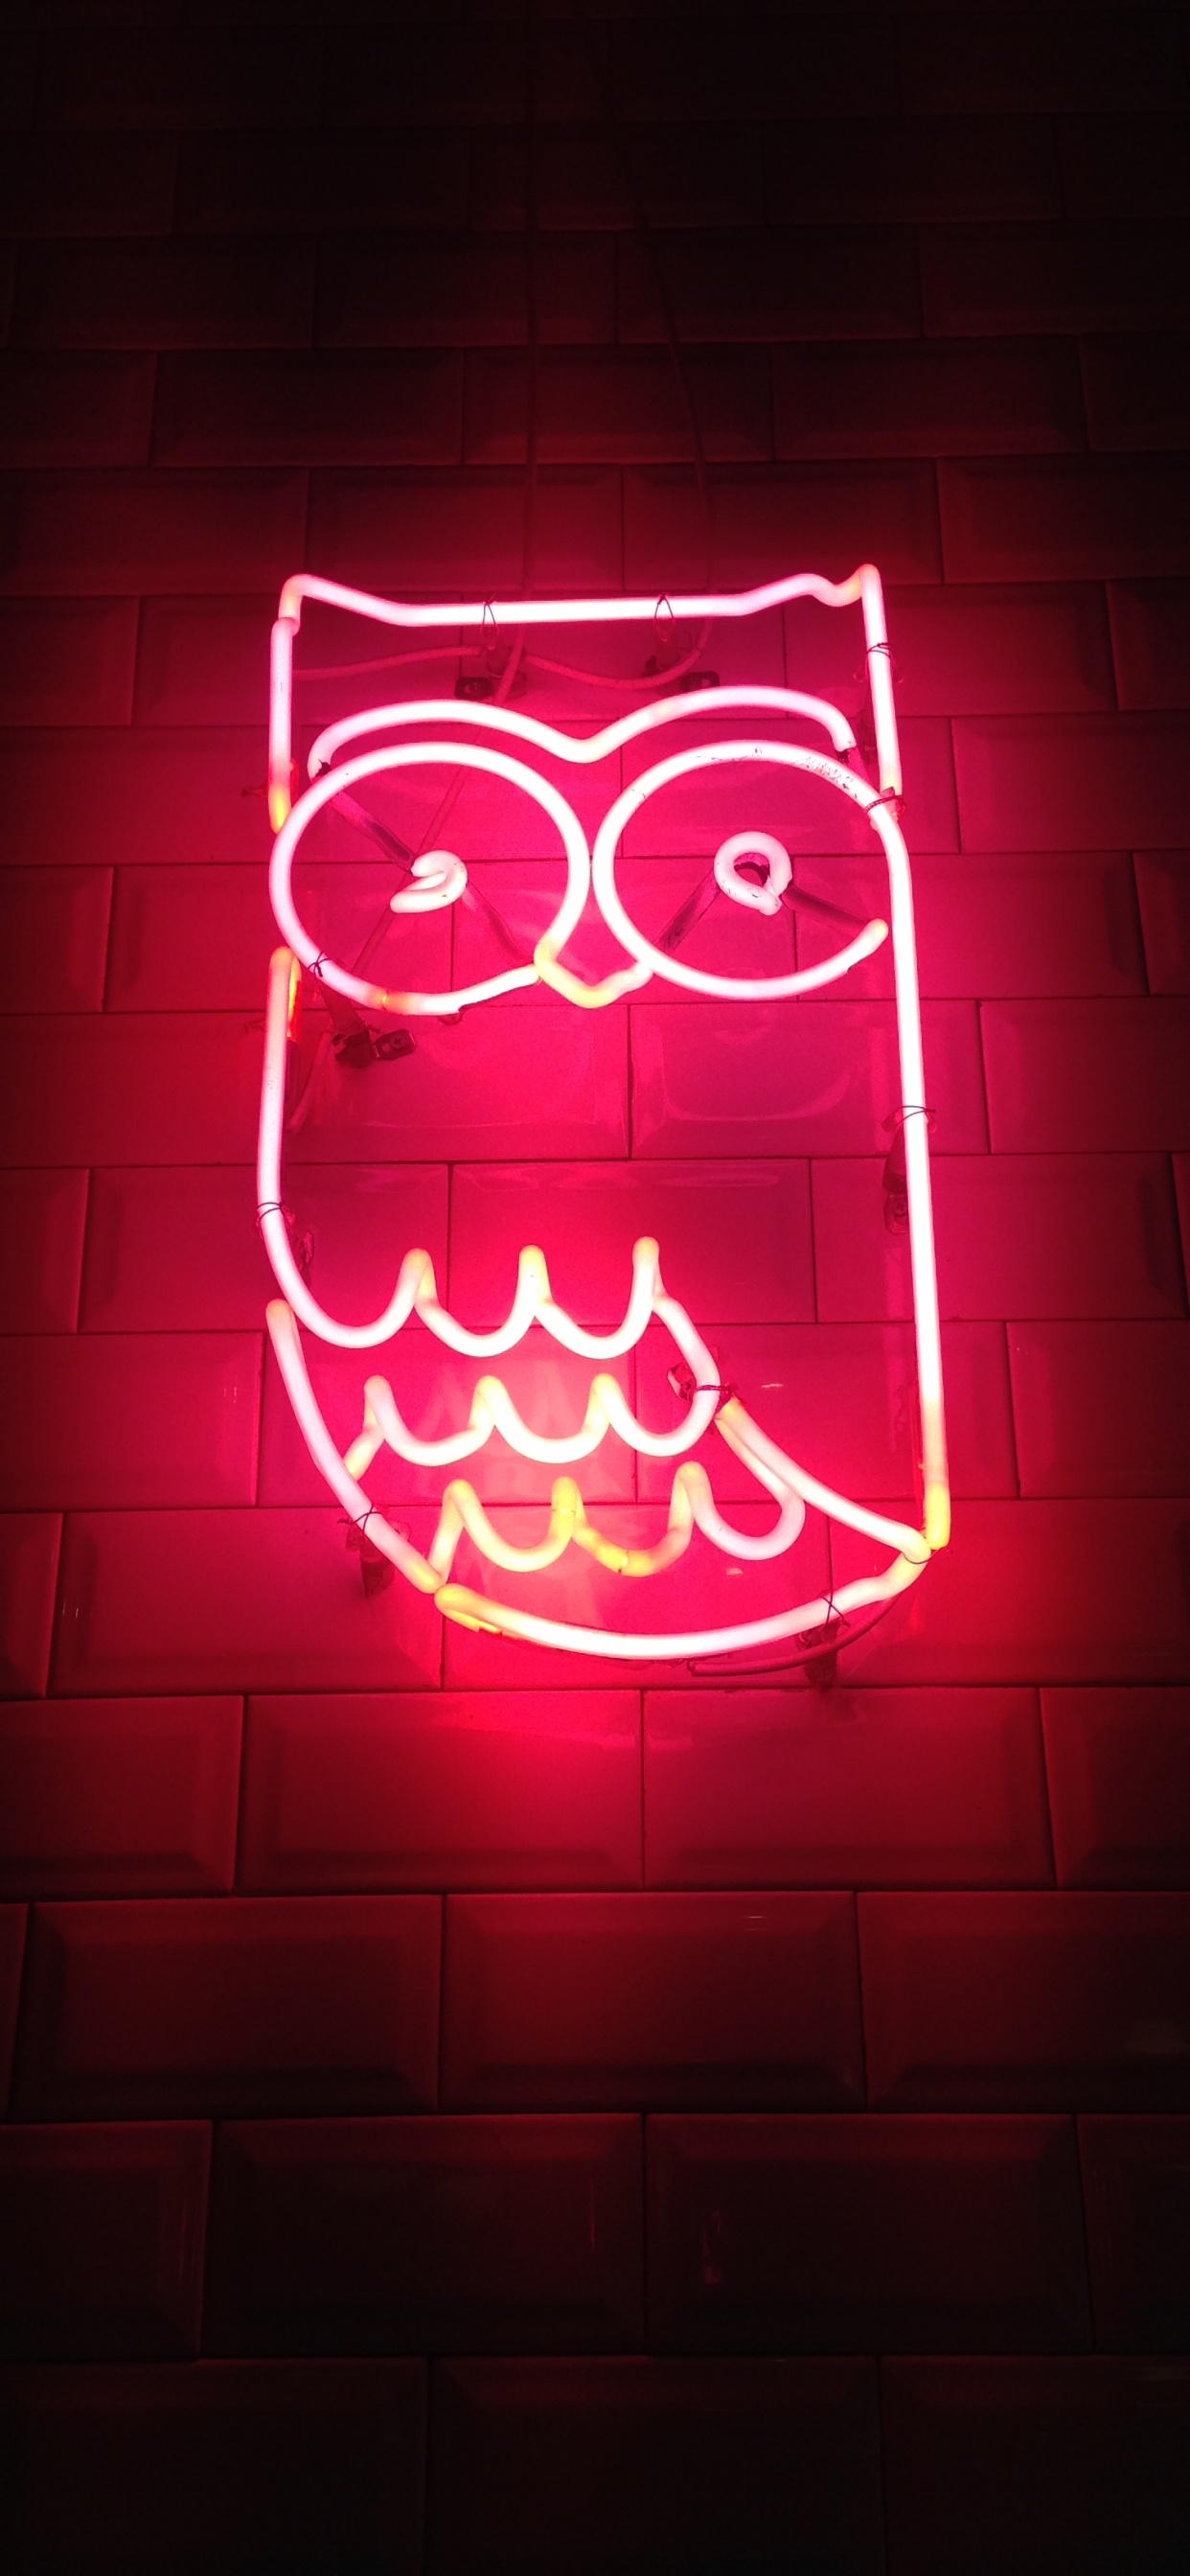 Aesthetic Neon Owl, Owls, Neon, Neon Lighting, Light. Wallpaper in 1242x2688 Resolution